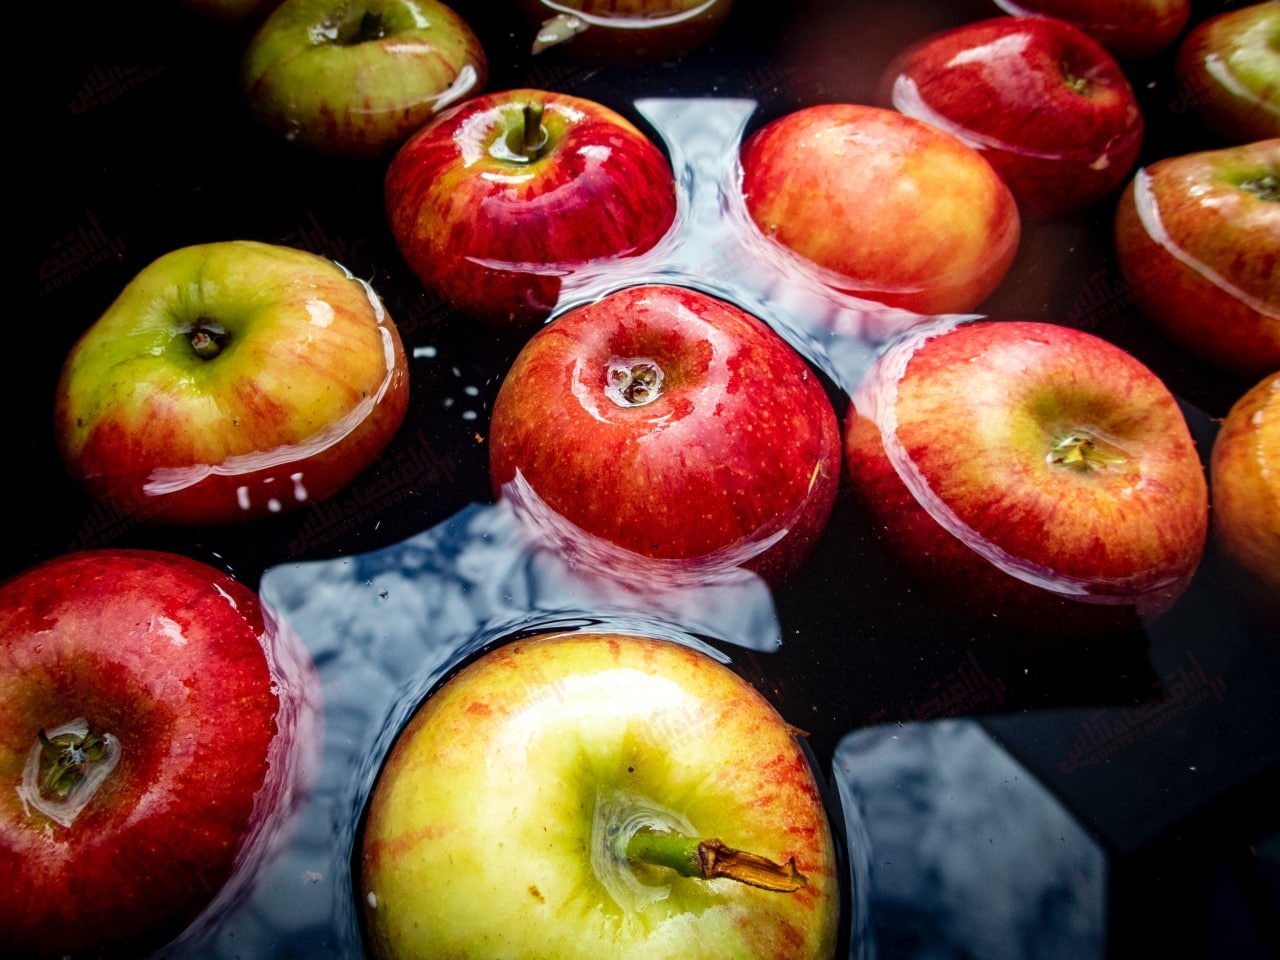 خرید و فروش حواله صادرات سیب رونق گرفت